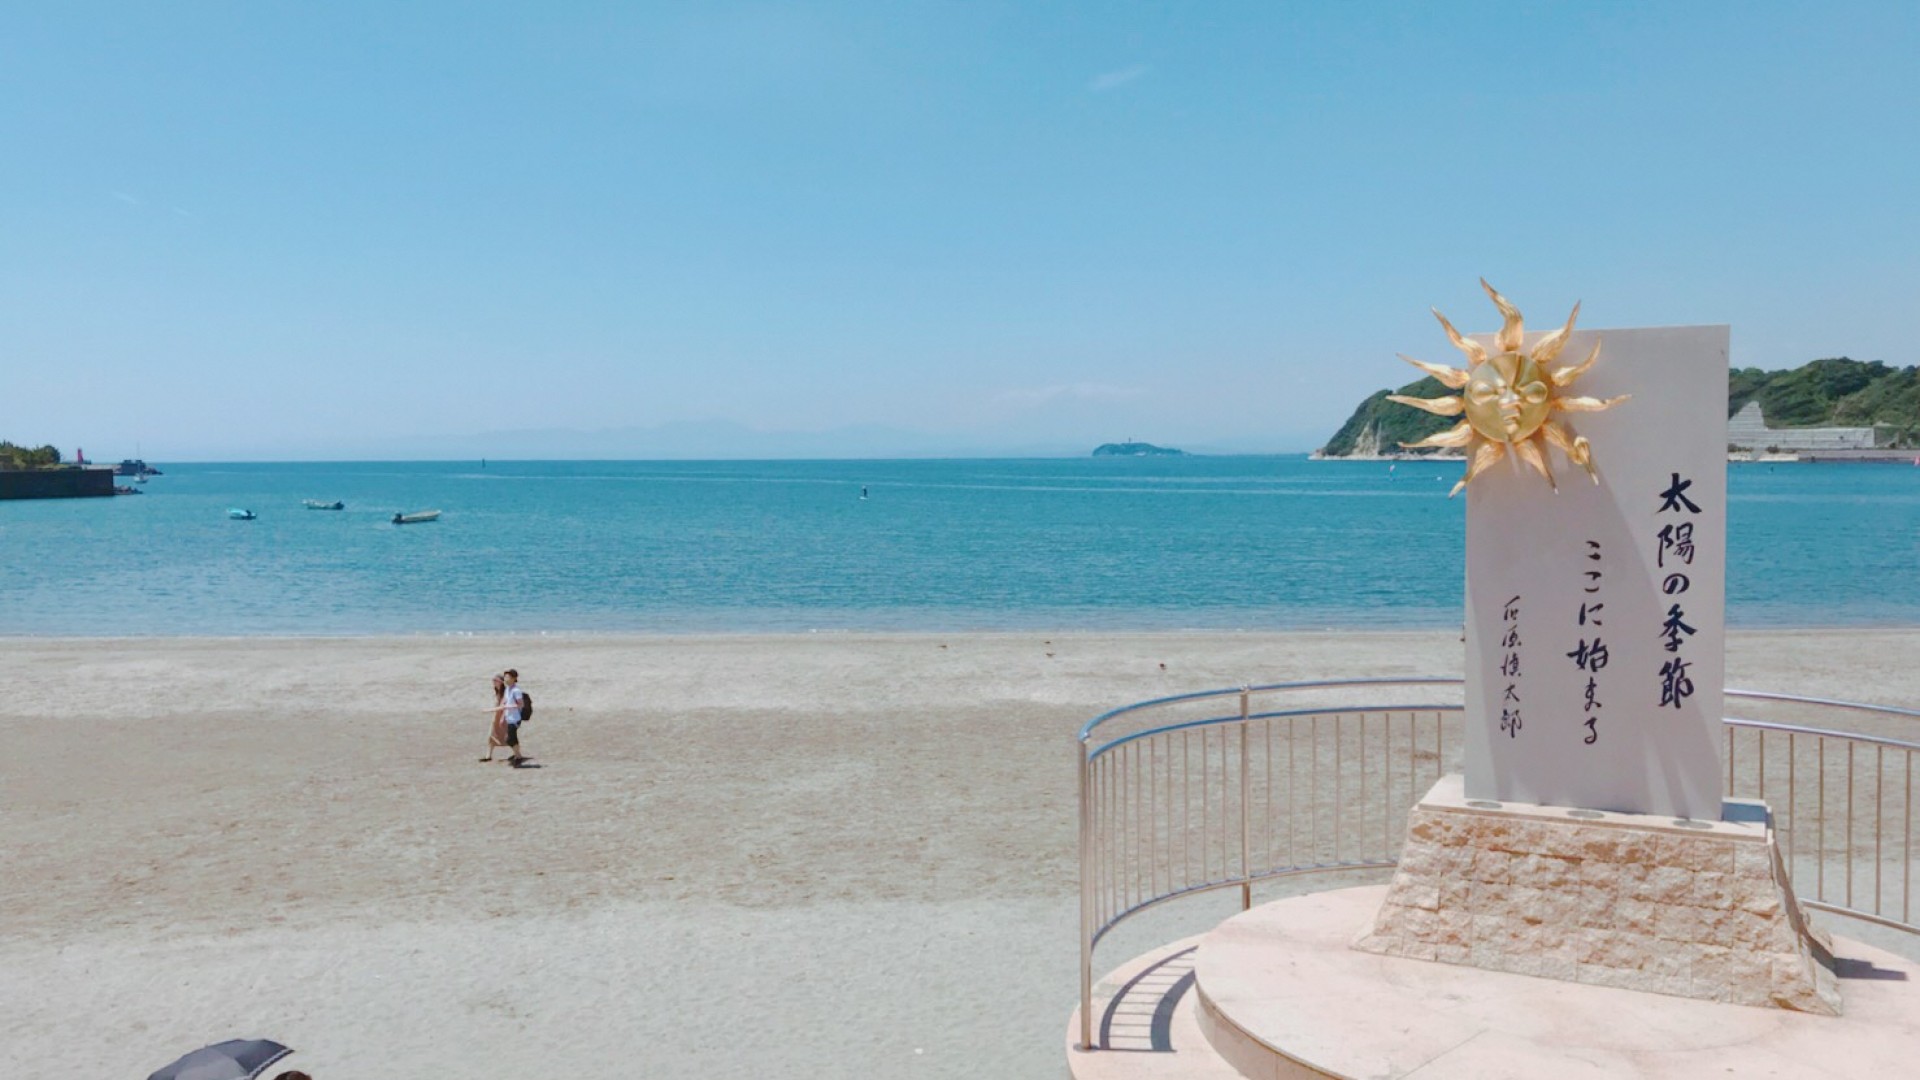 이른아침 카나가와 해안선의 풍경